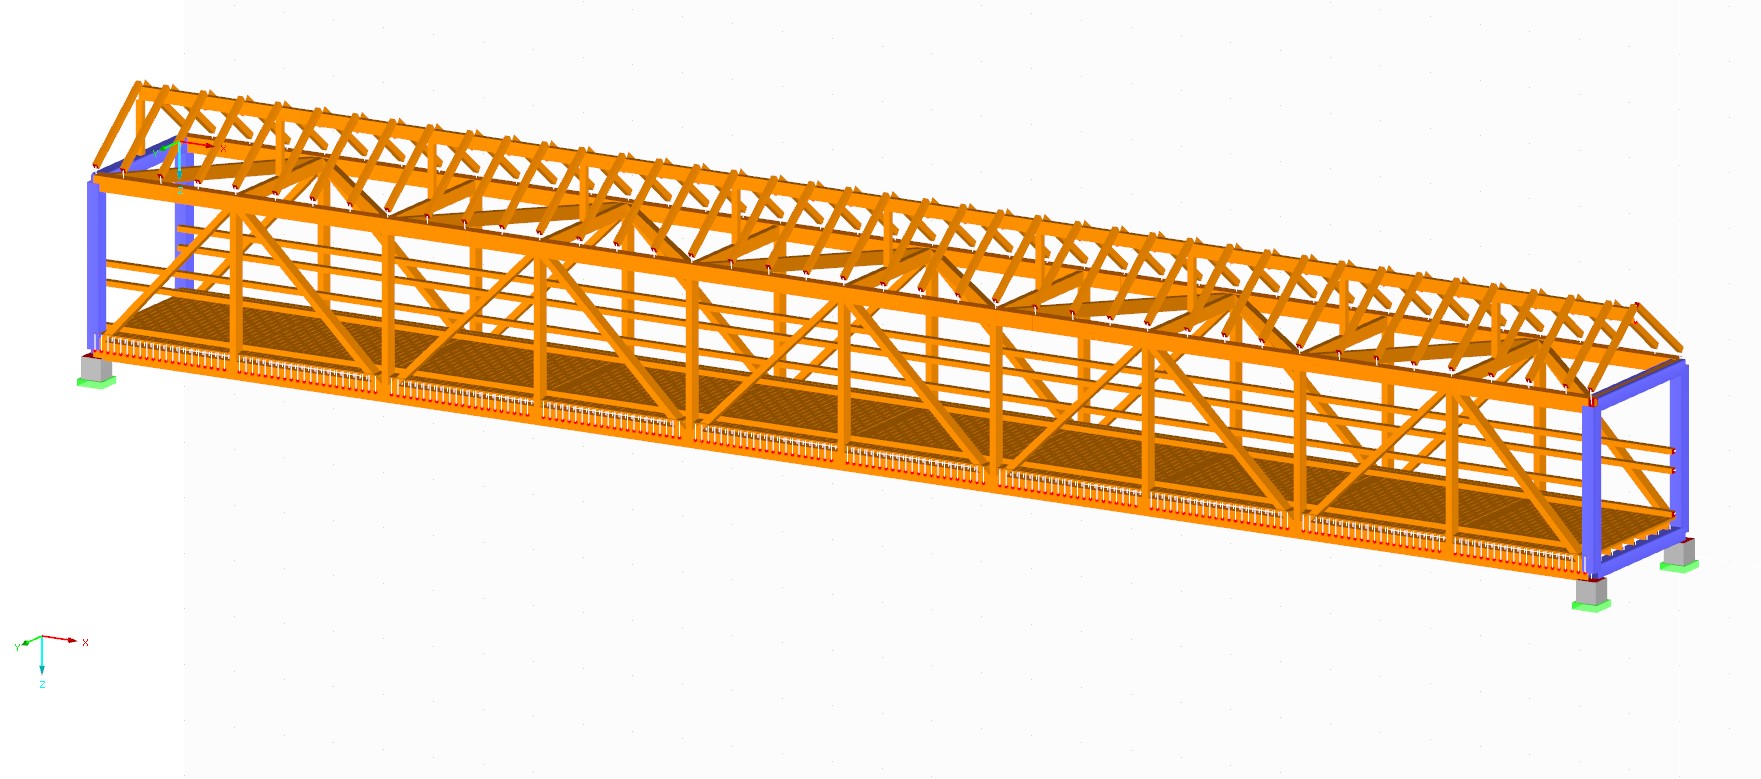 Desenvolvimento de um programa PED para análise de danos em pontes de madeira com base em medições de vibração